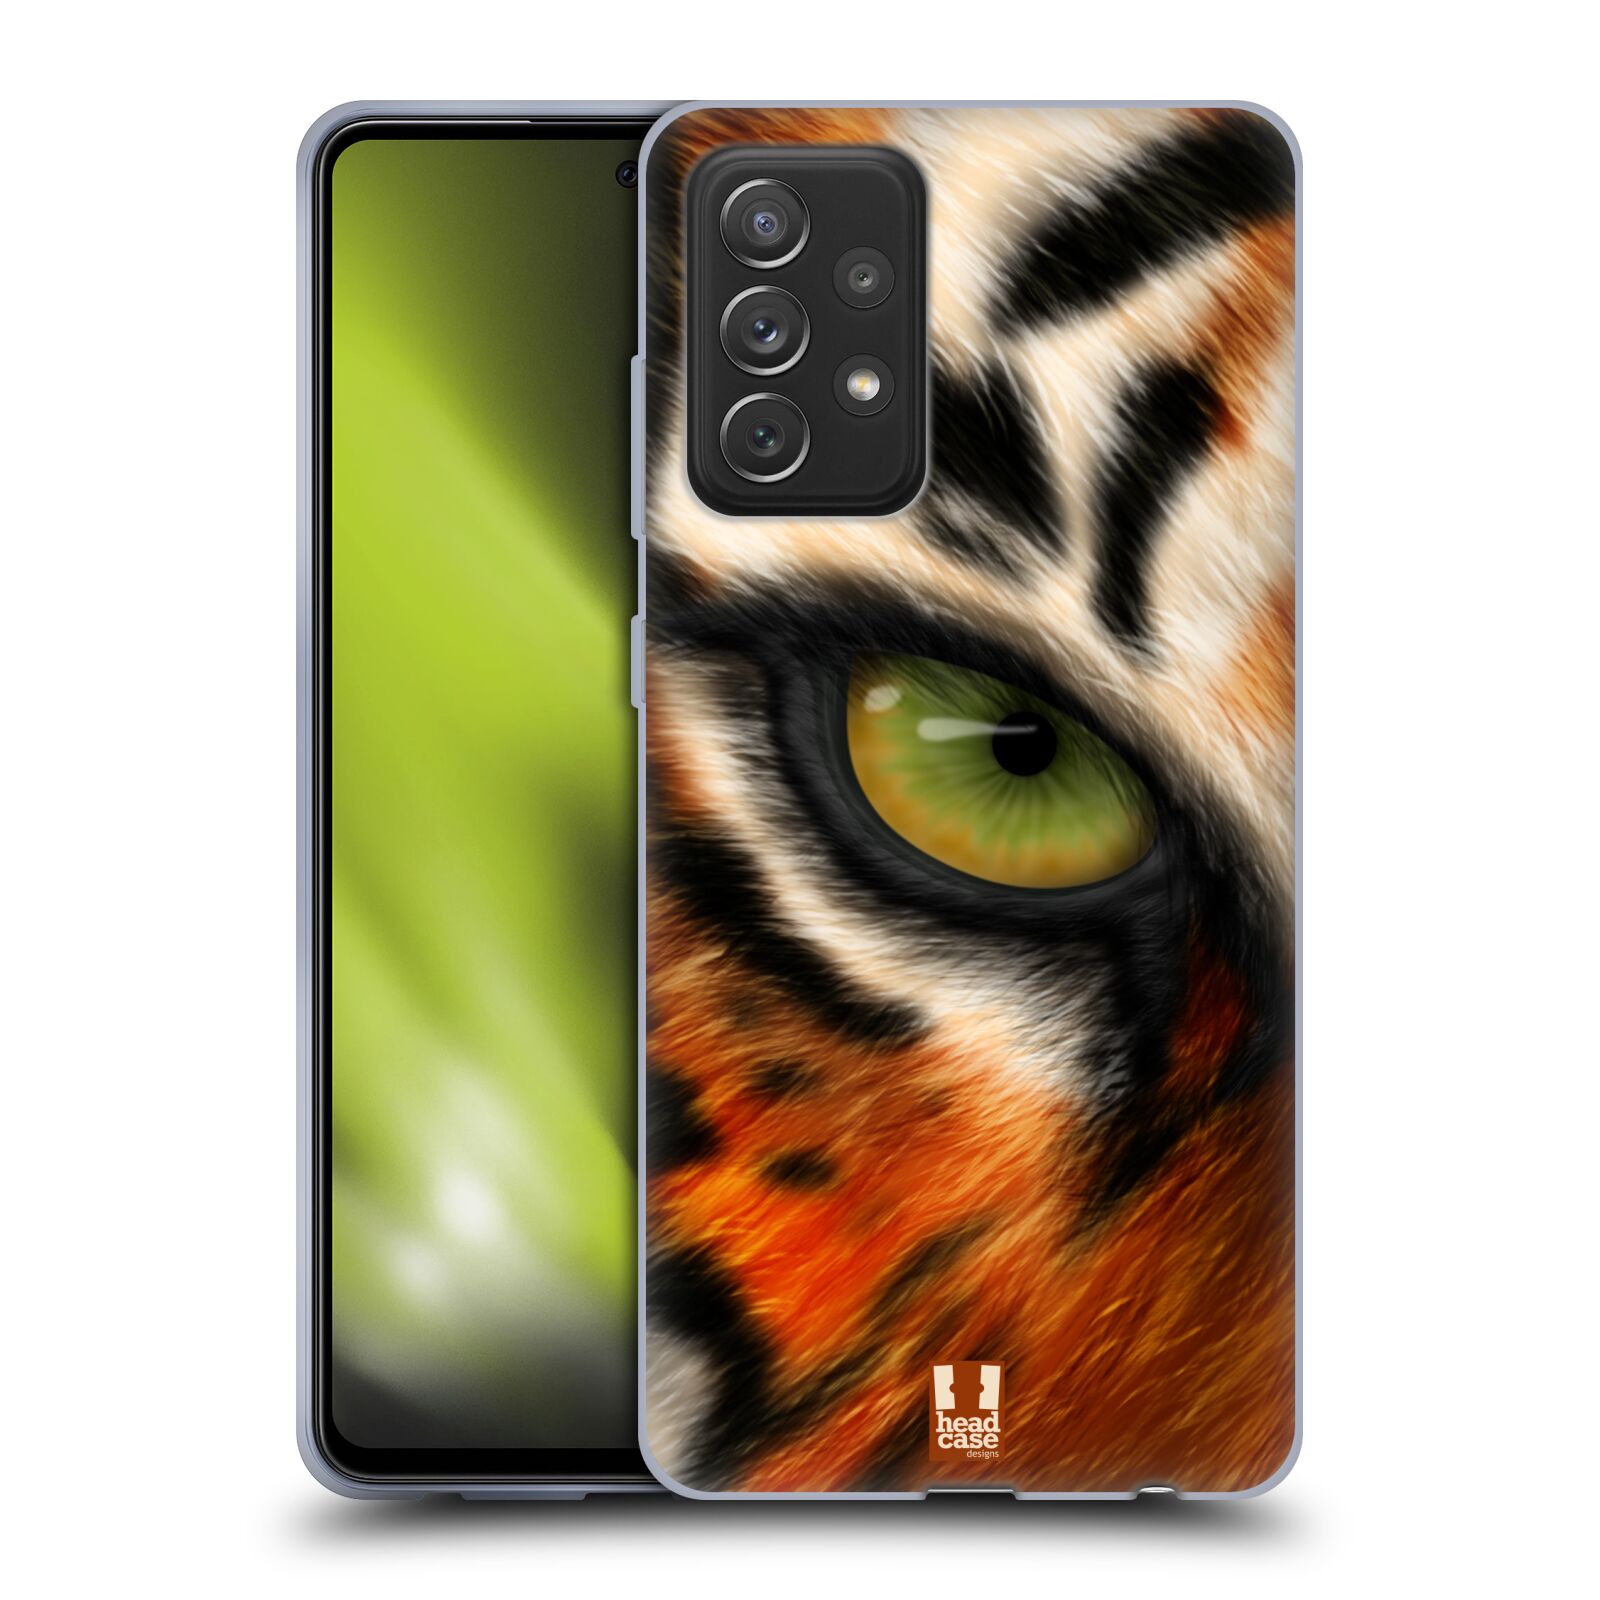 Plastový obal HEAD CASE na mobil Samsung Galaxy A72 / A72 5G vzor pohled zvířete oko tygr